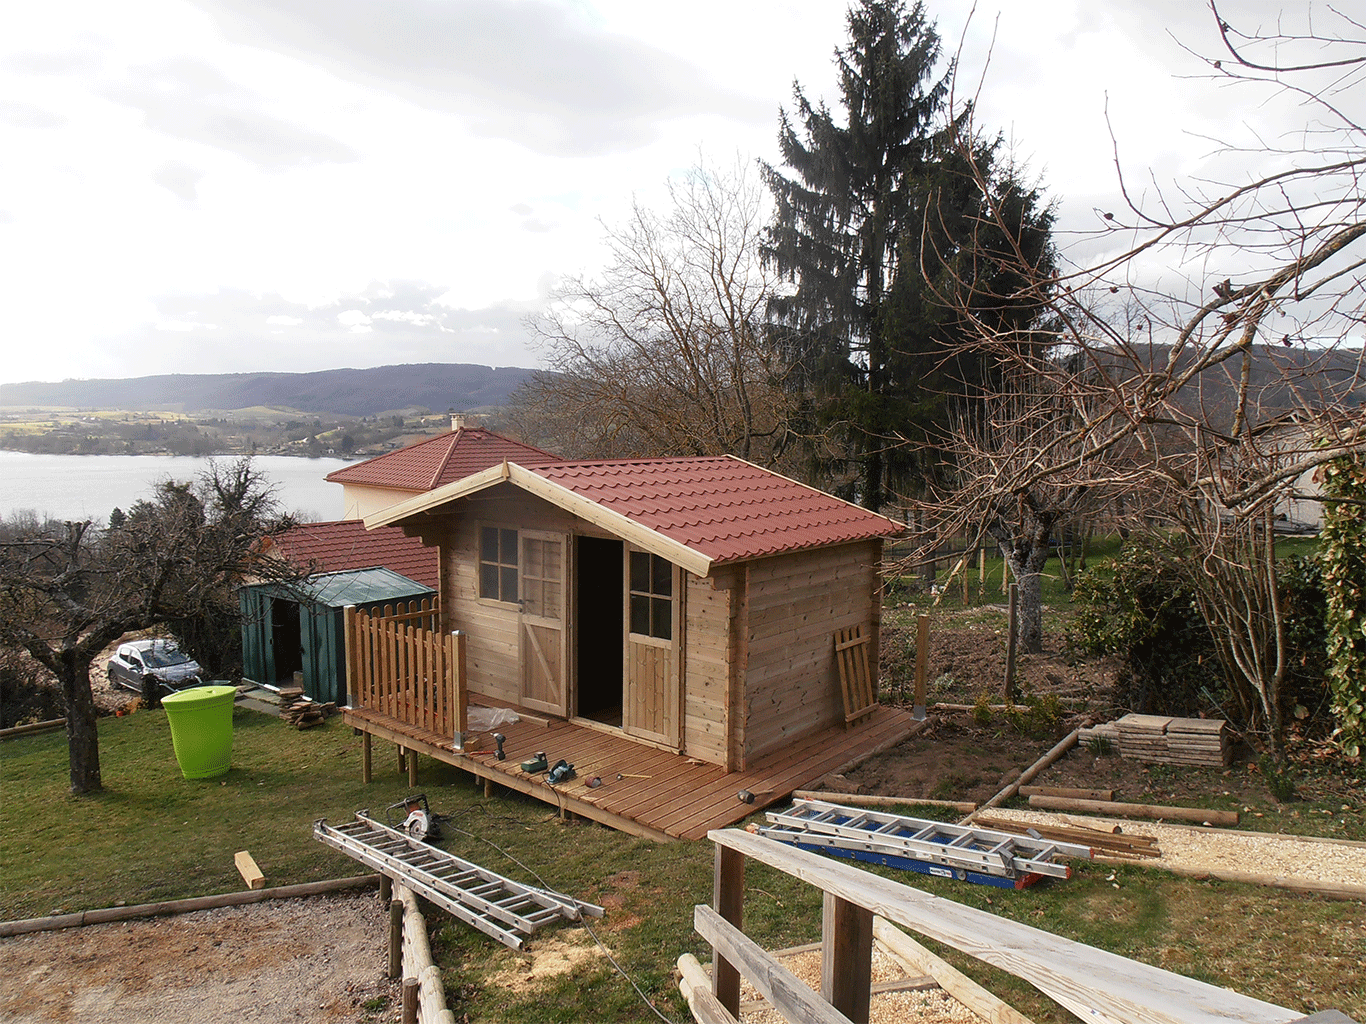 Pergola abris terrasse bois composite dauphiné environnement la murette pays voironnais